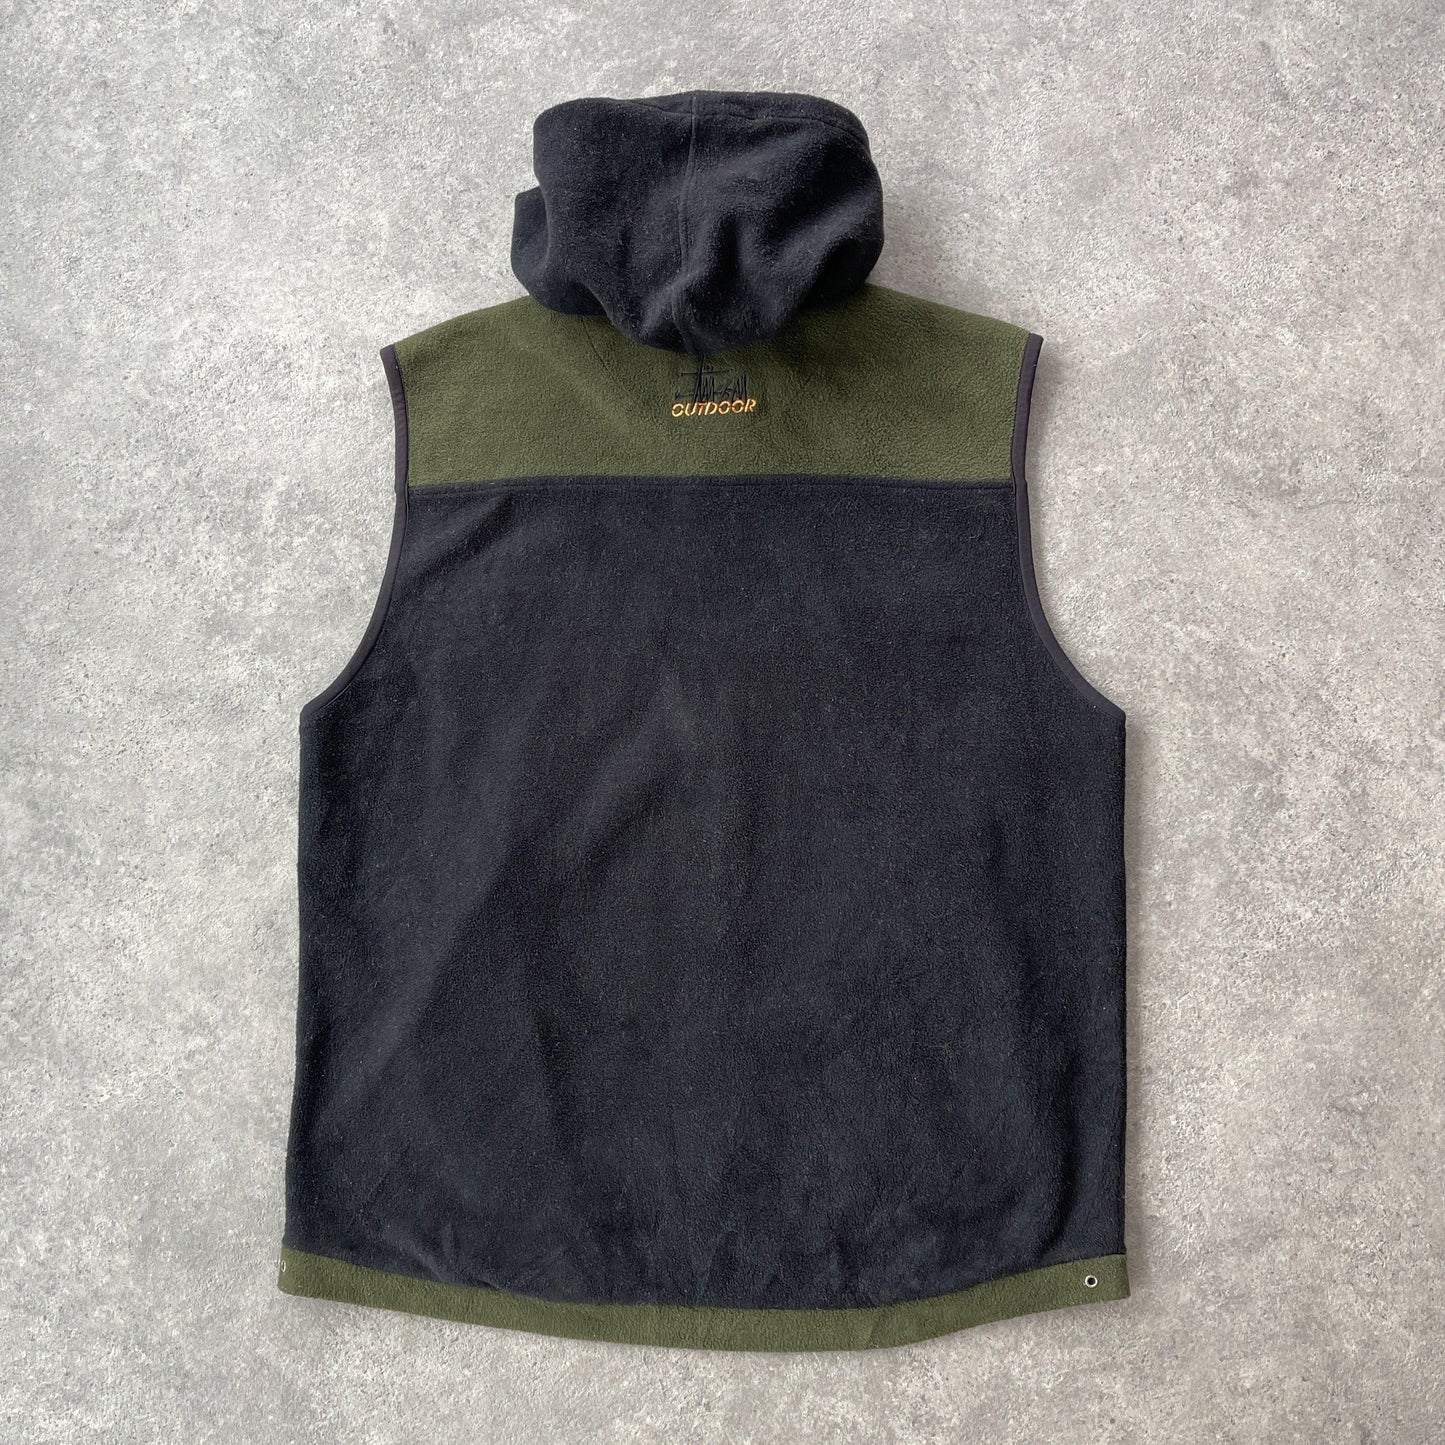 Stussy Outdoor 1990s zip up fleece vest jacket (L) - Known Source